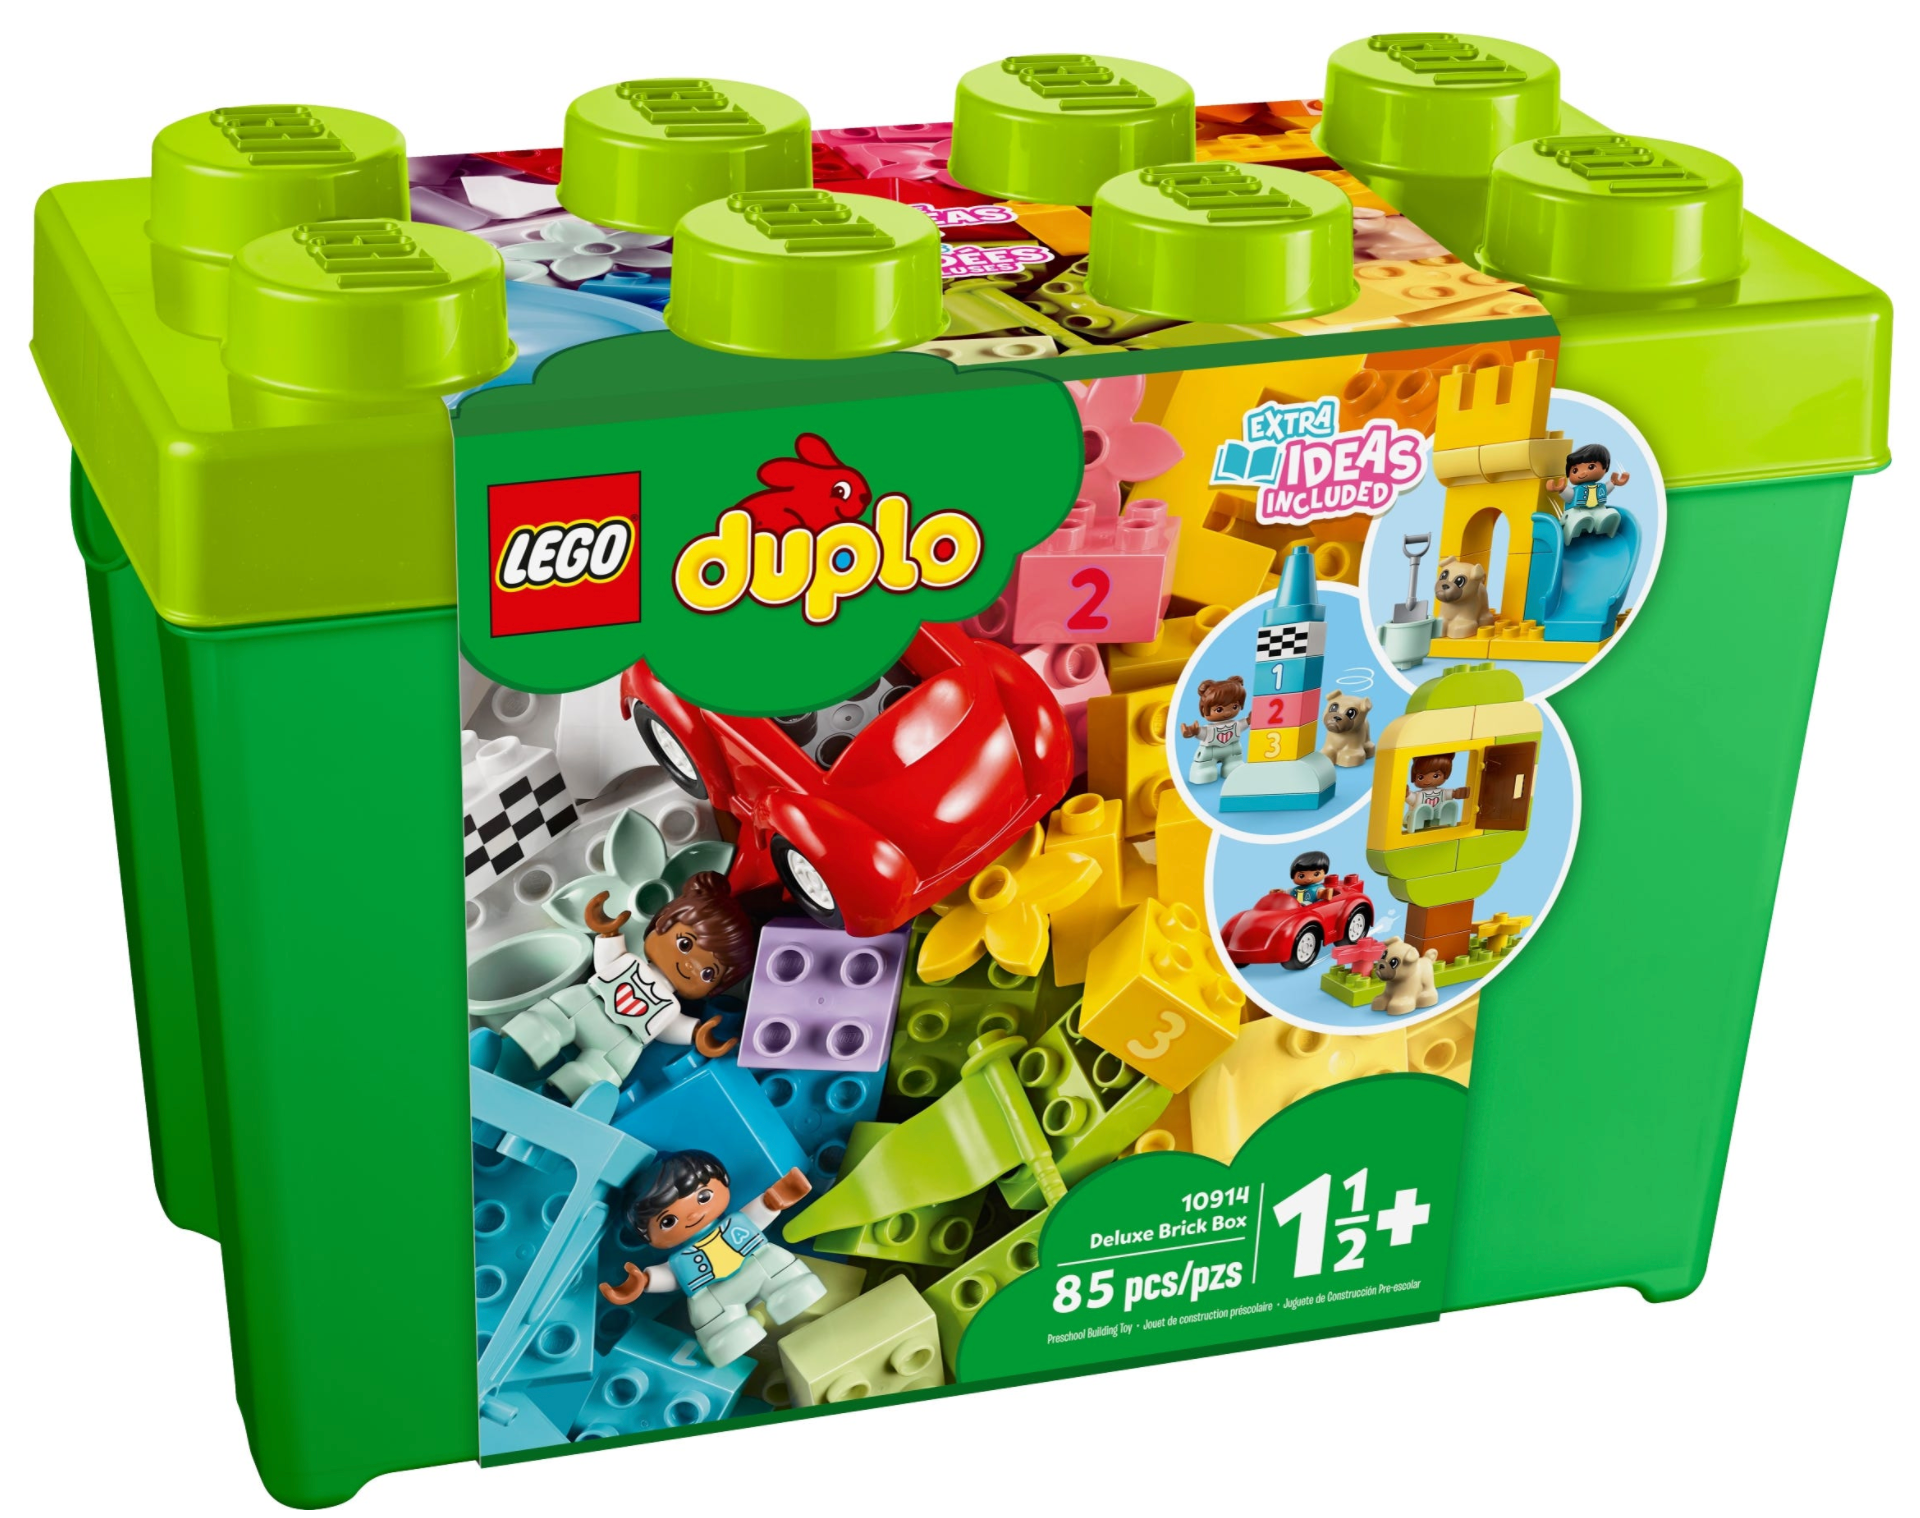 LEGO: DUPLO - Deluxe Brick Box